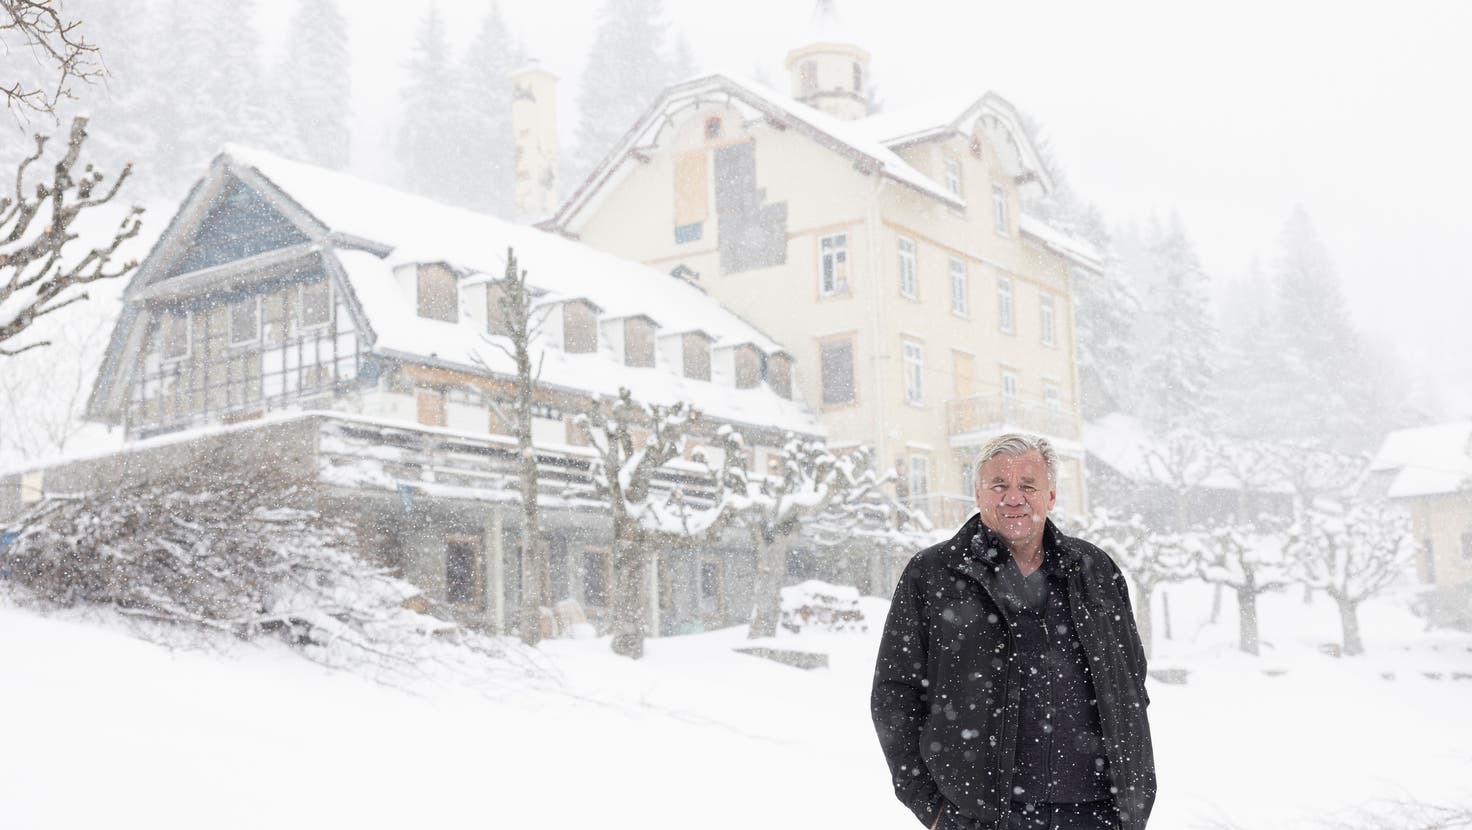 750'000 Franken hat der Badener Investor fürs Hotel des Alpes hingeblättert: Christoph Schoop im Schnee. (Bild: Severin Bigler)